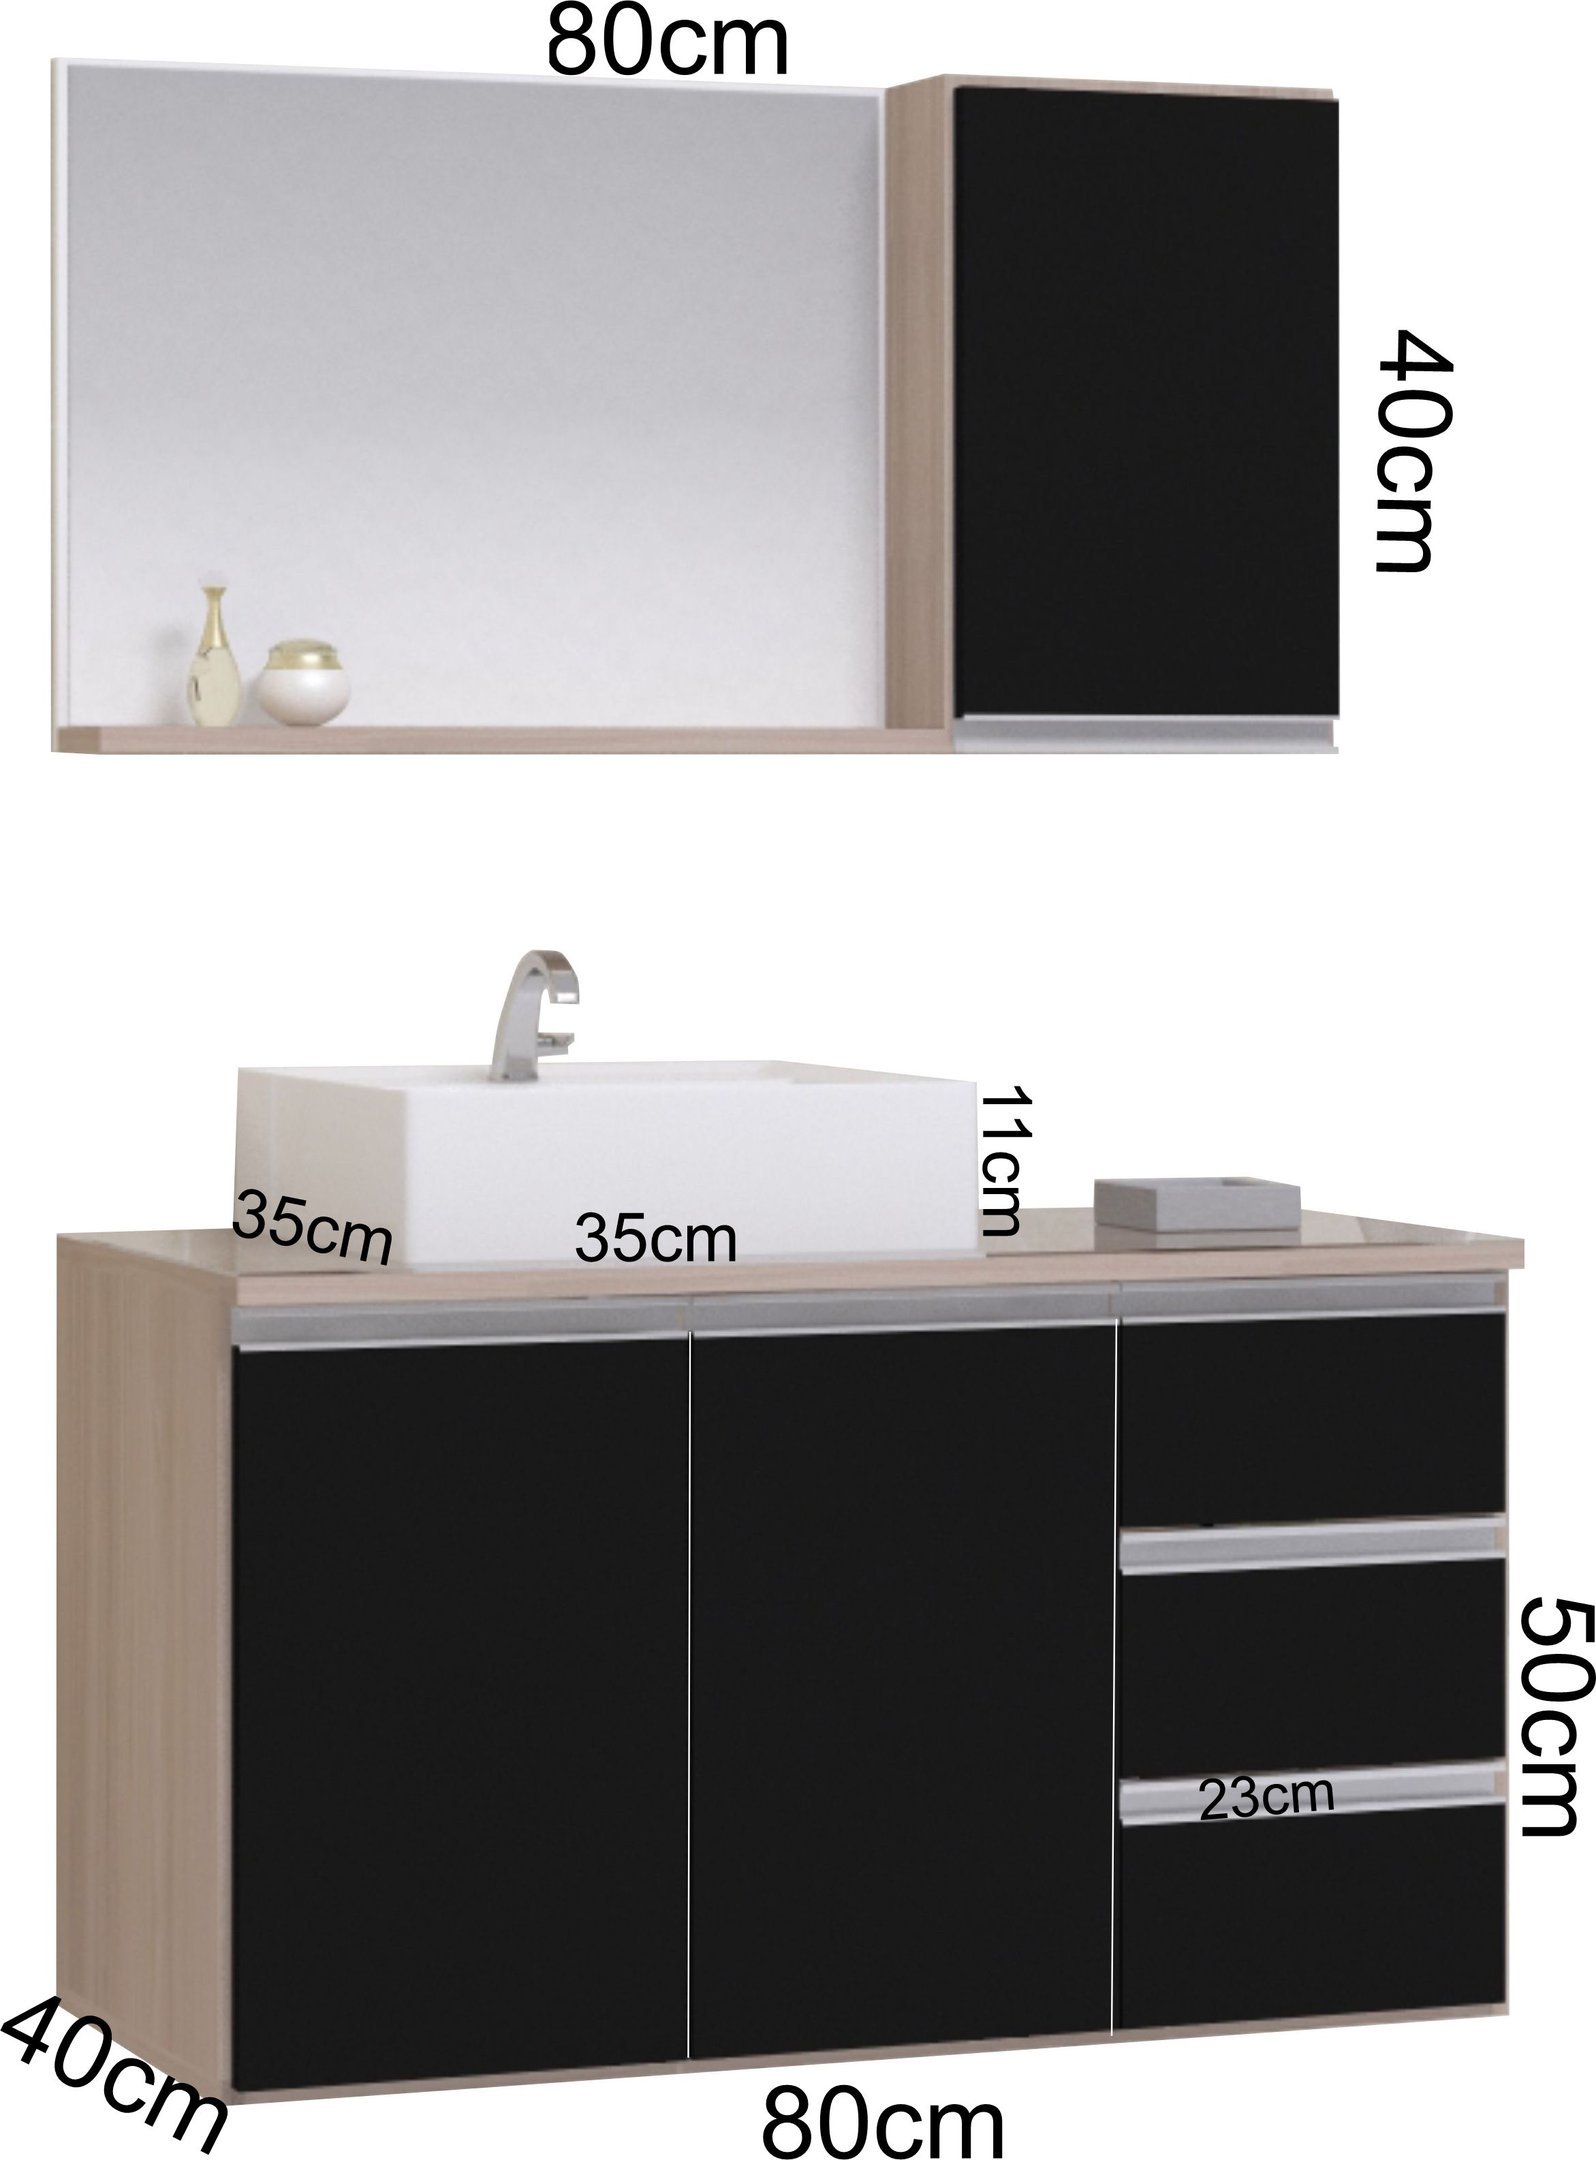 Conjunto Gabinete Banheiro Completo Prisma 80cm Madeirado / Preto COM TAMPO DE VIDRO - 3